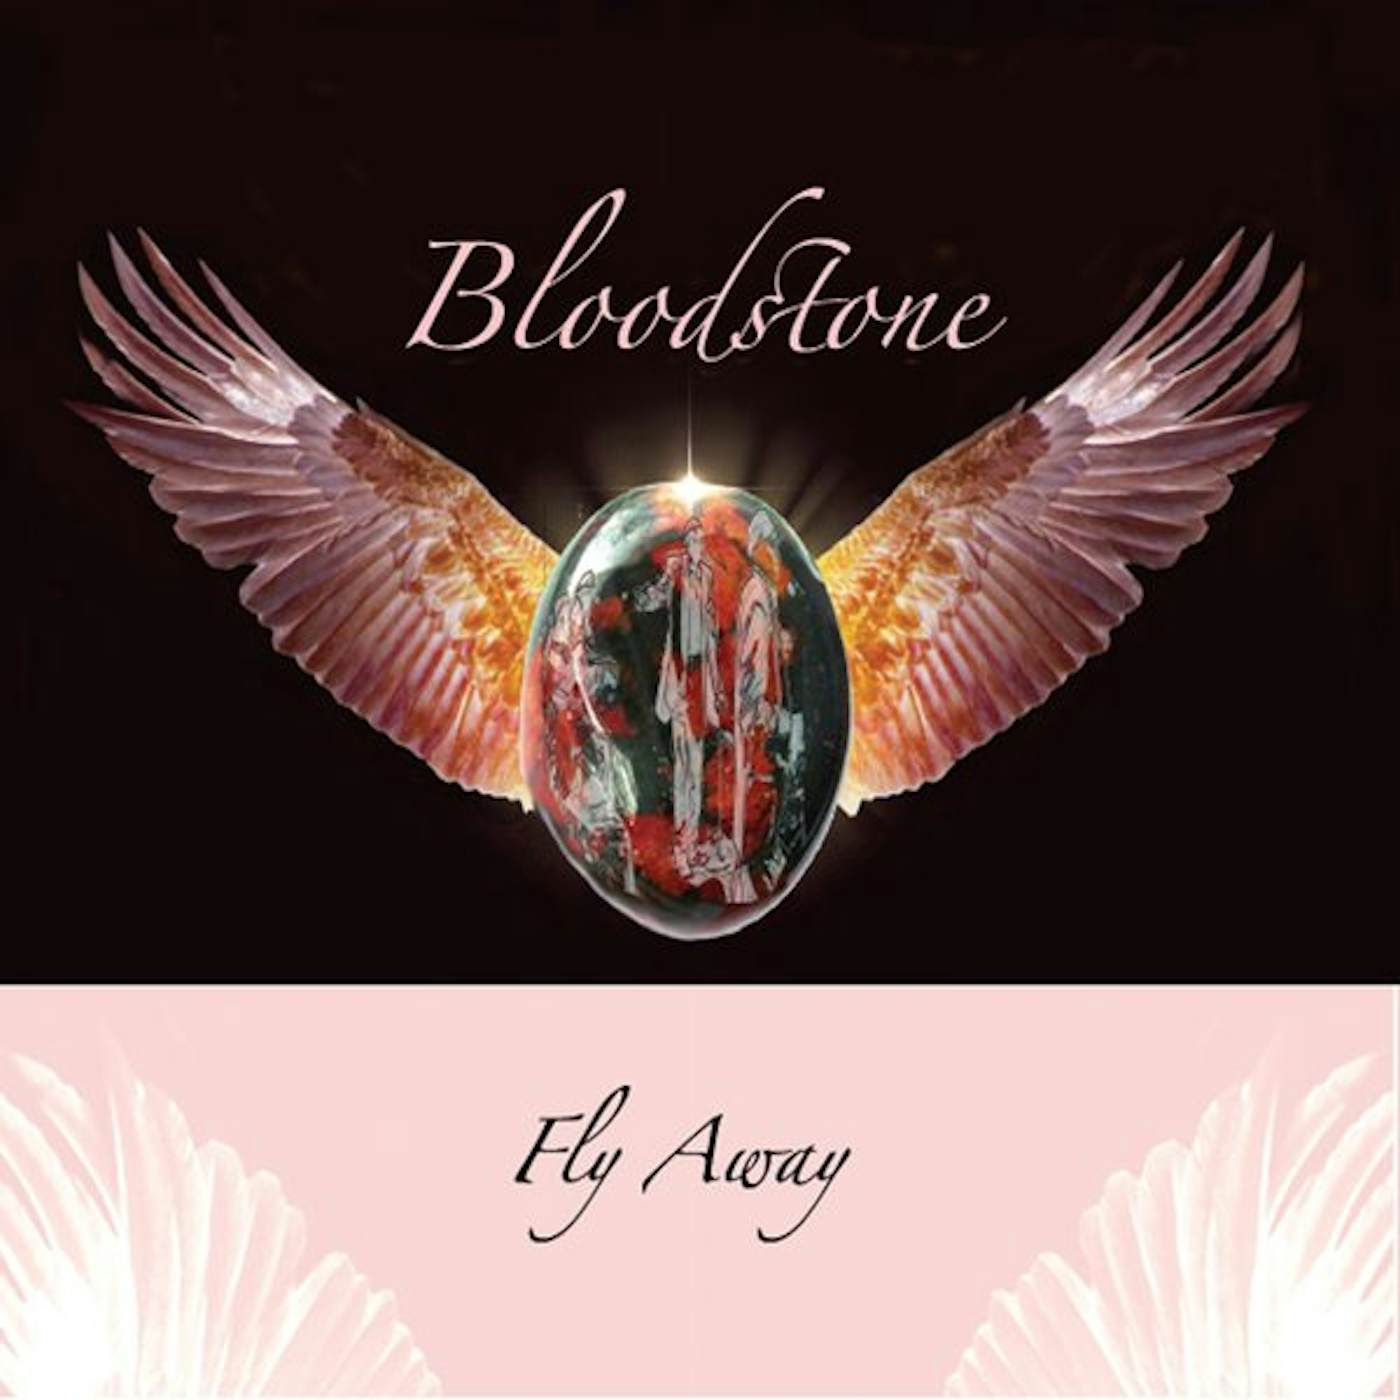 Bloodstone FLY AWAY CD